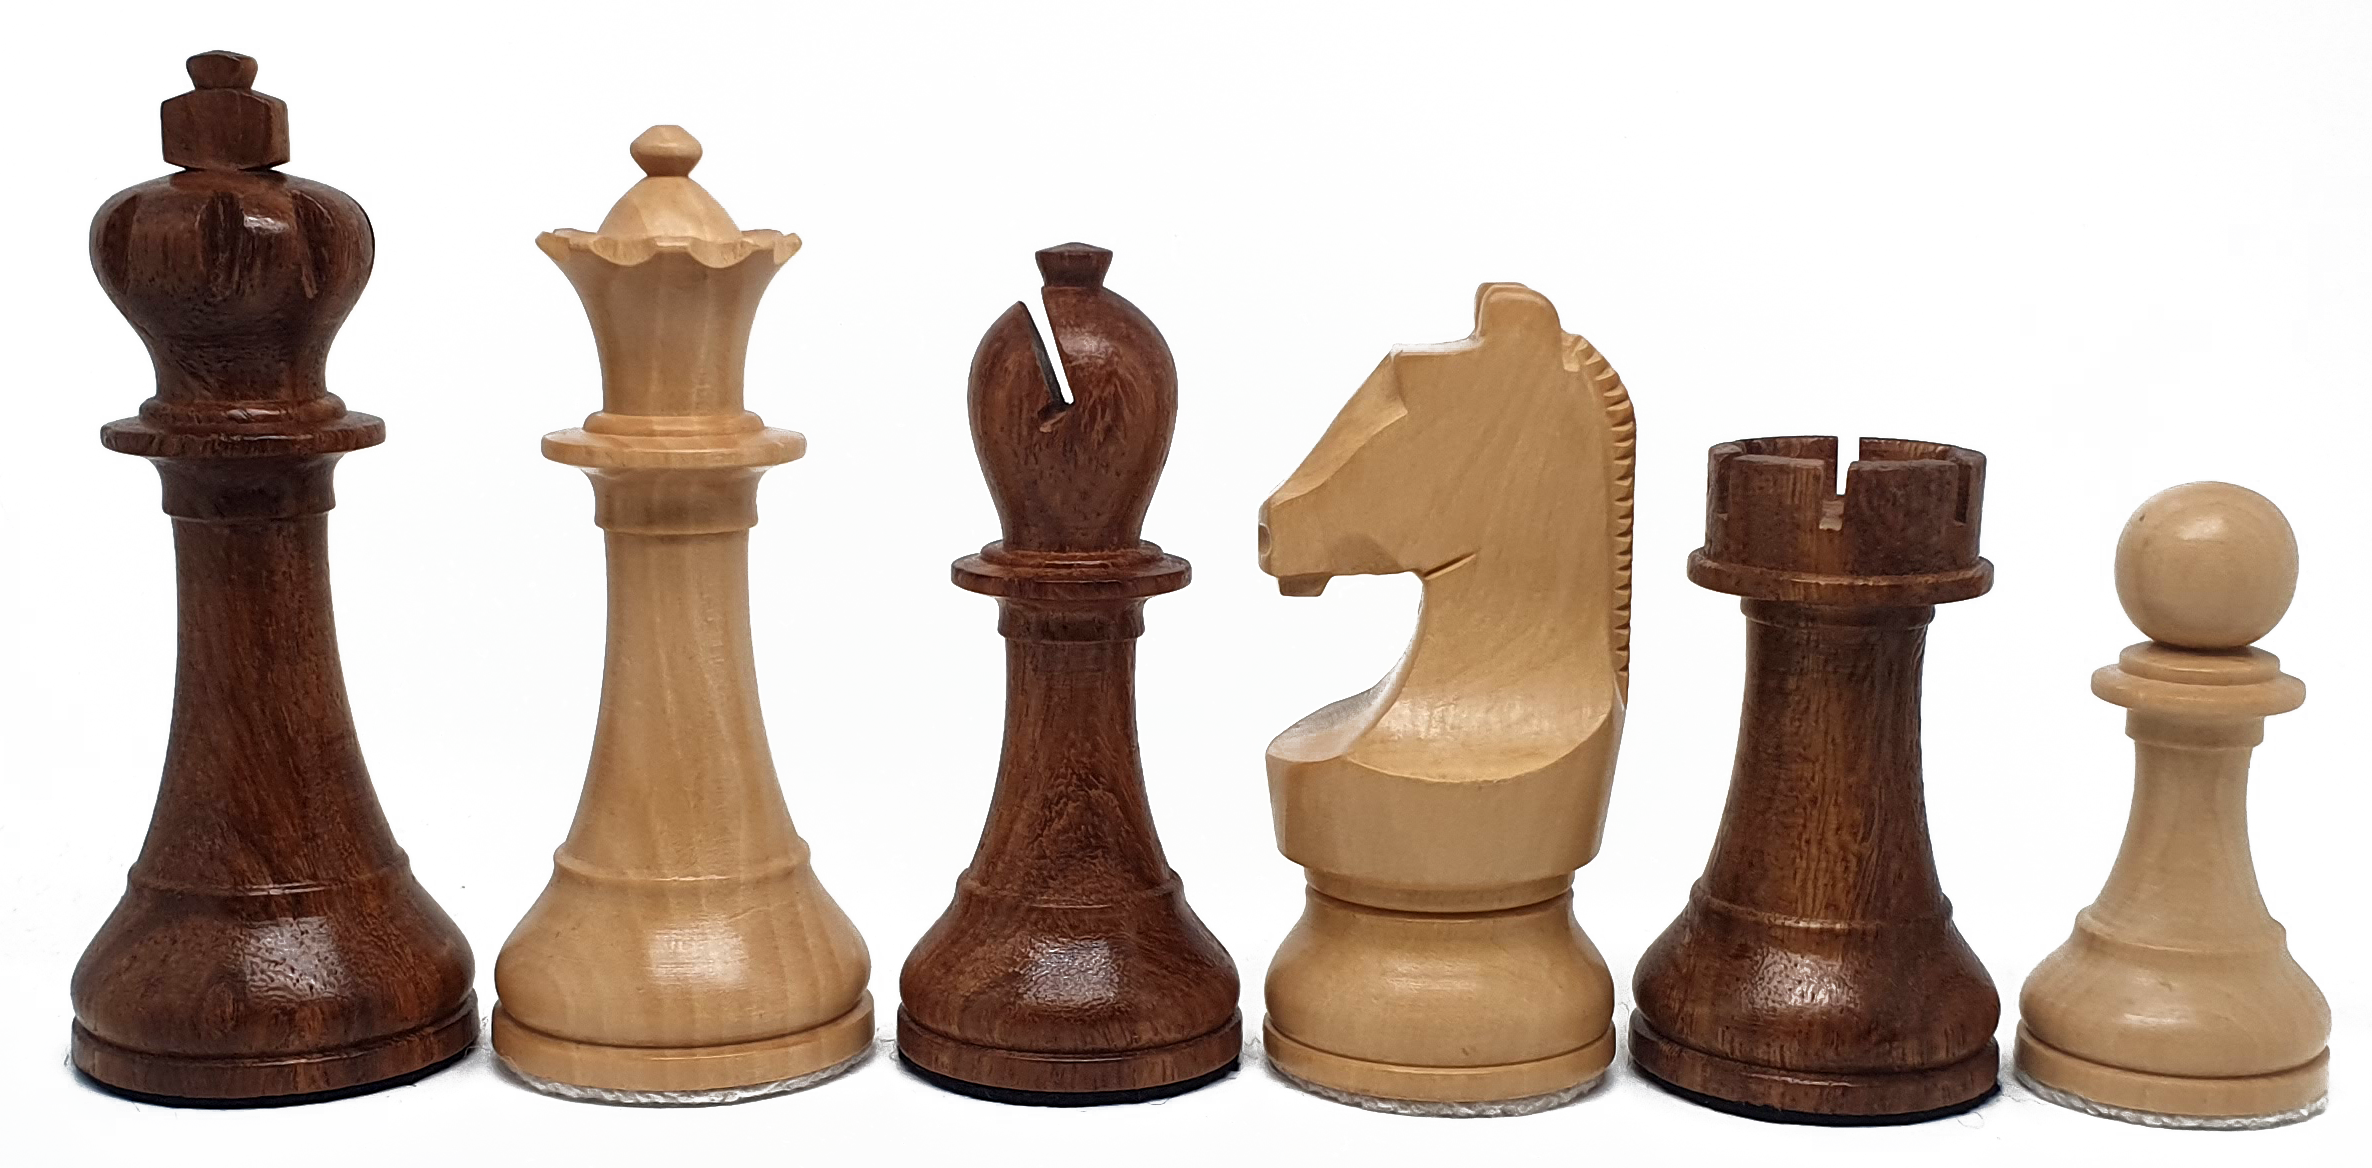 VI/ Piezas de ajedrez modelo Carlsen-Nepo "3,75" Shisham